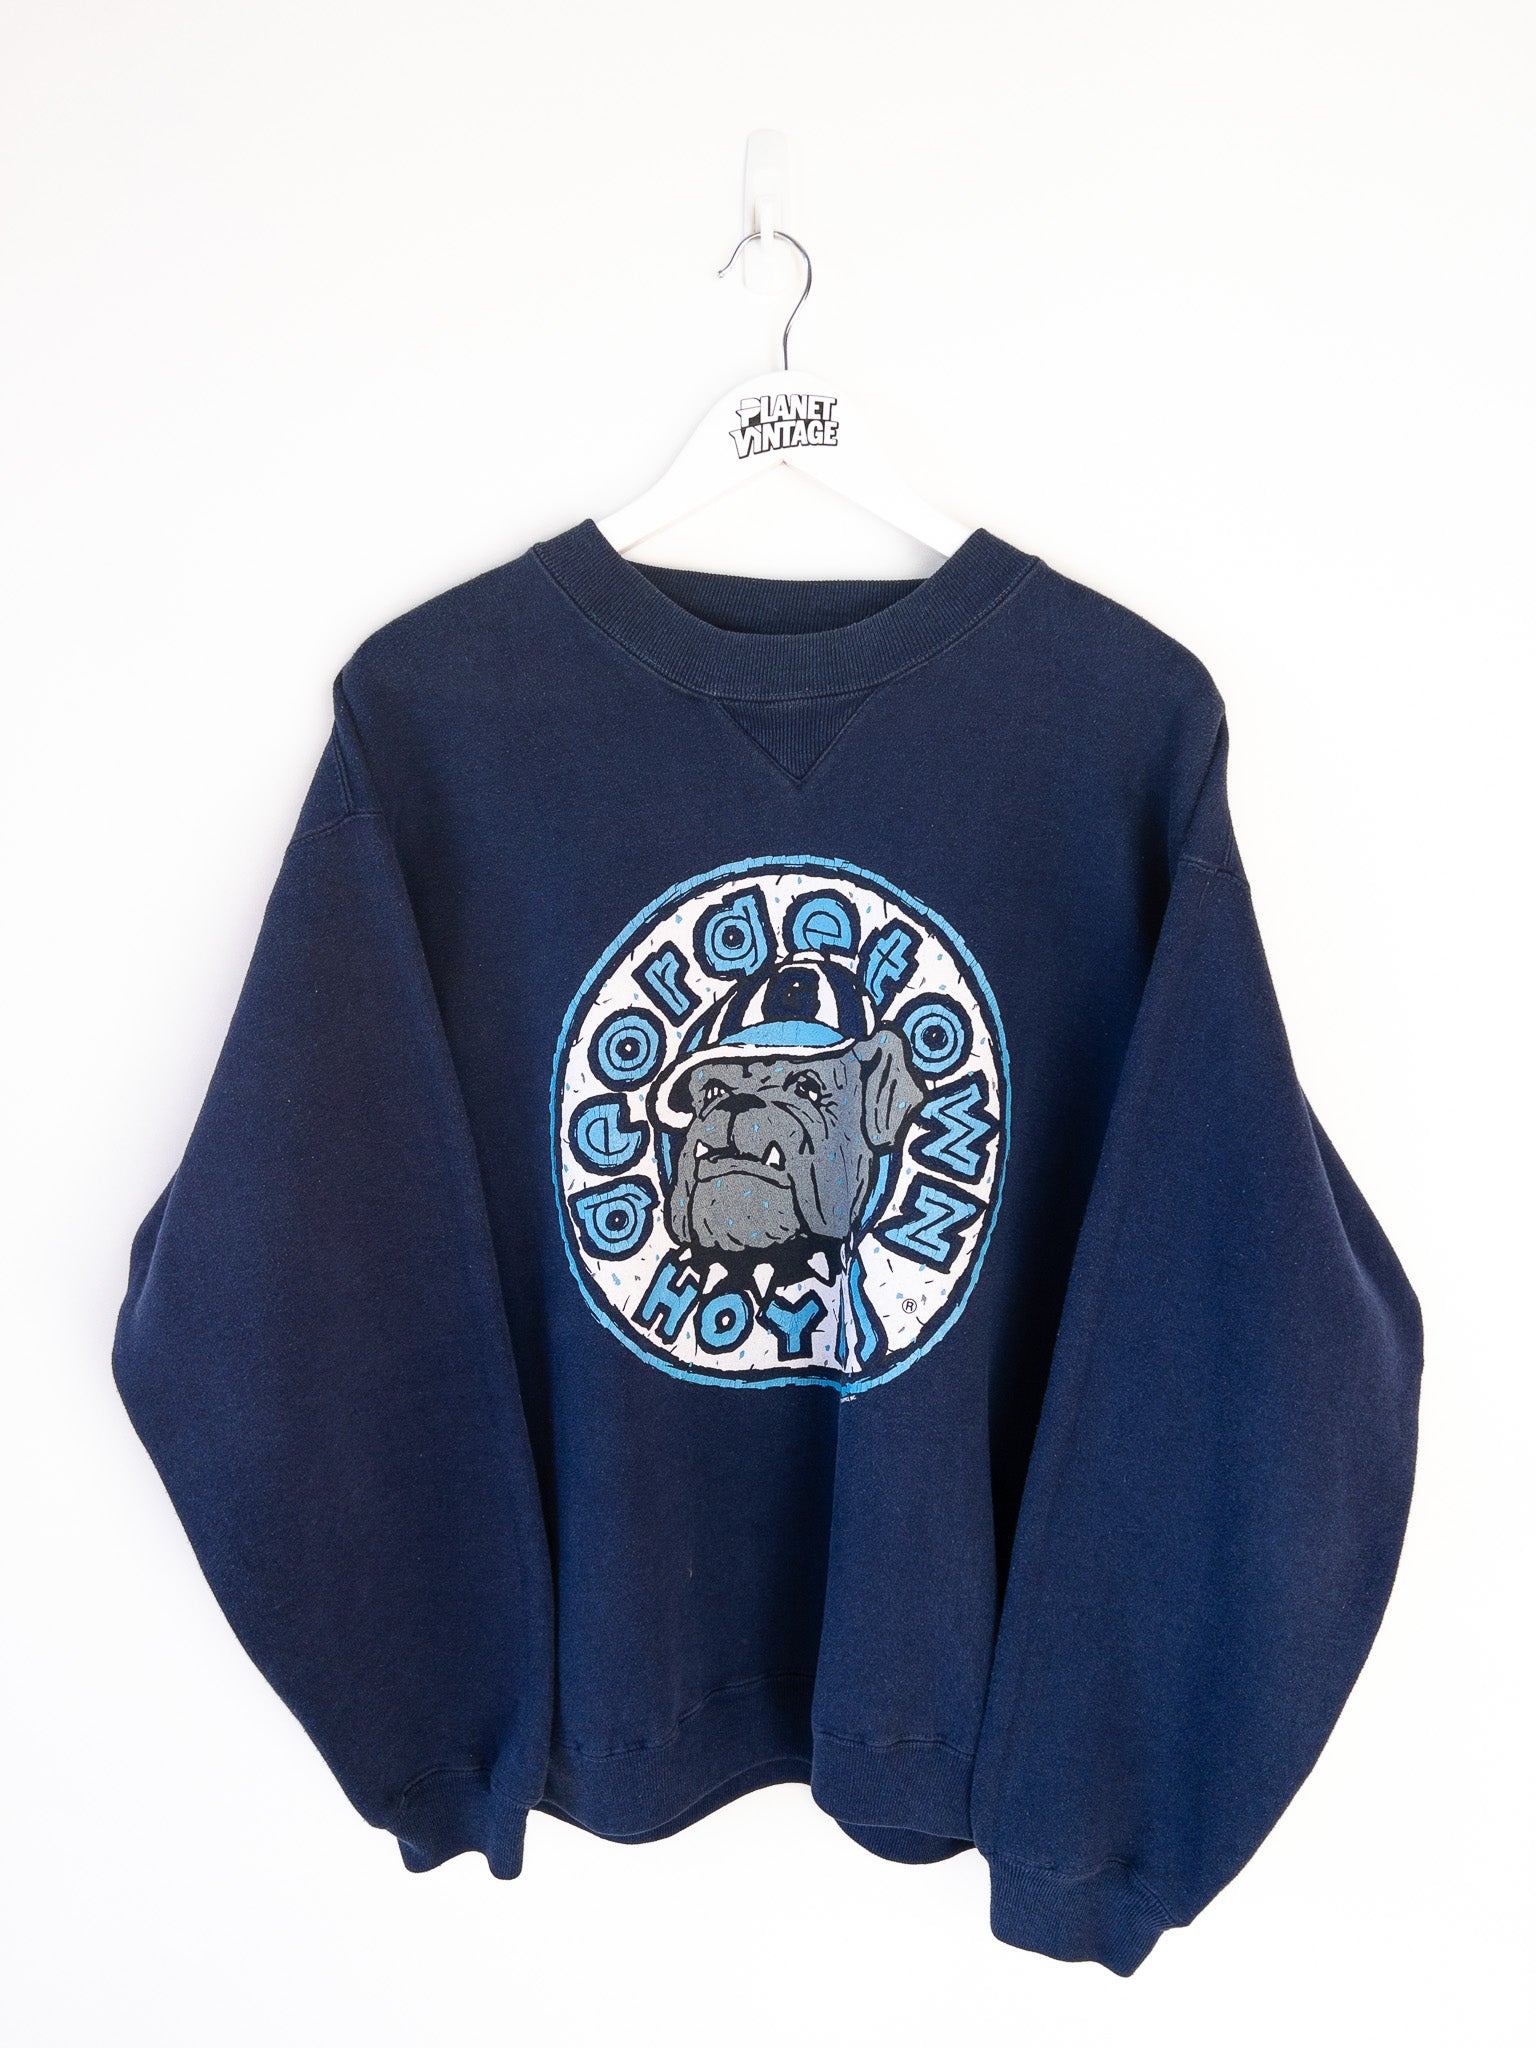 Vintage Georgetown Hoyas Sweatshirt (XL)